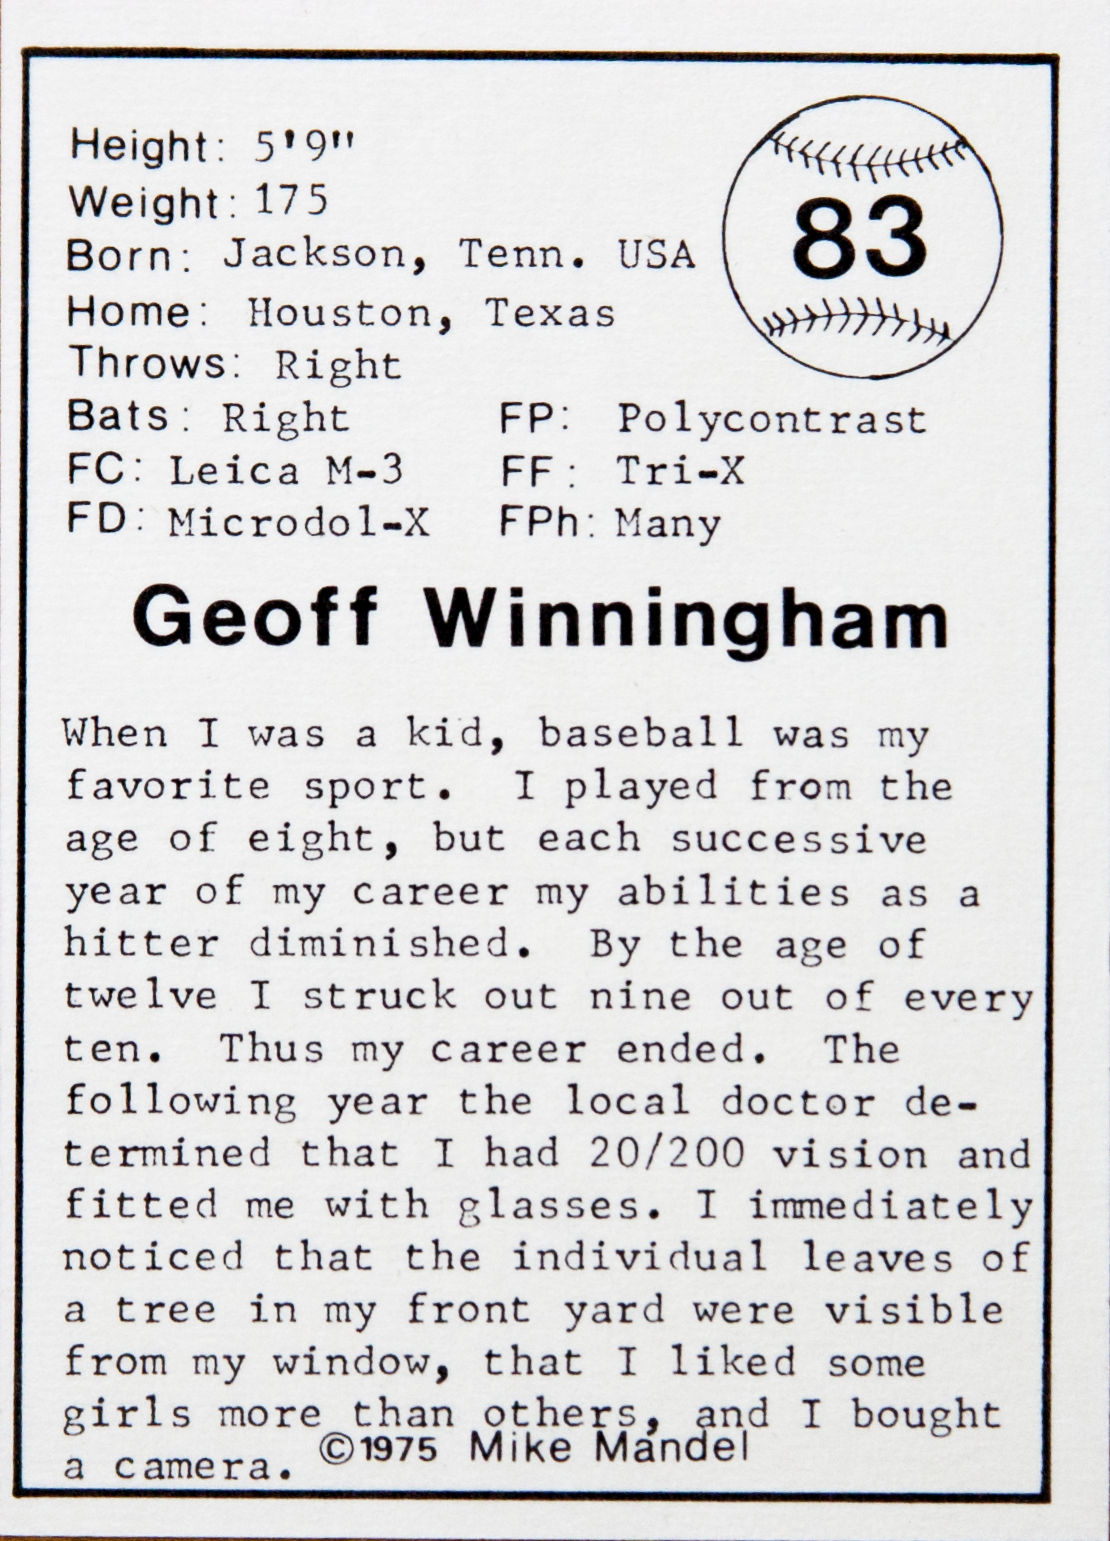 Geof Winningham